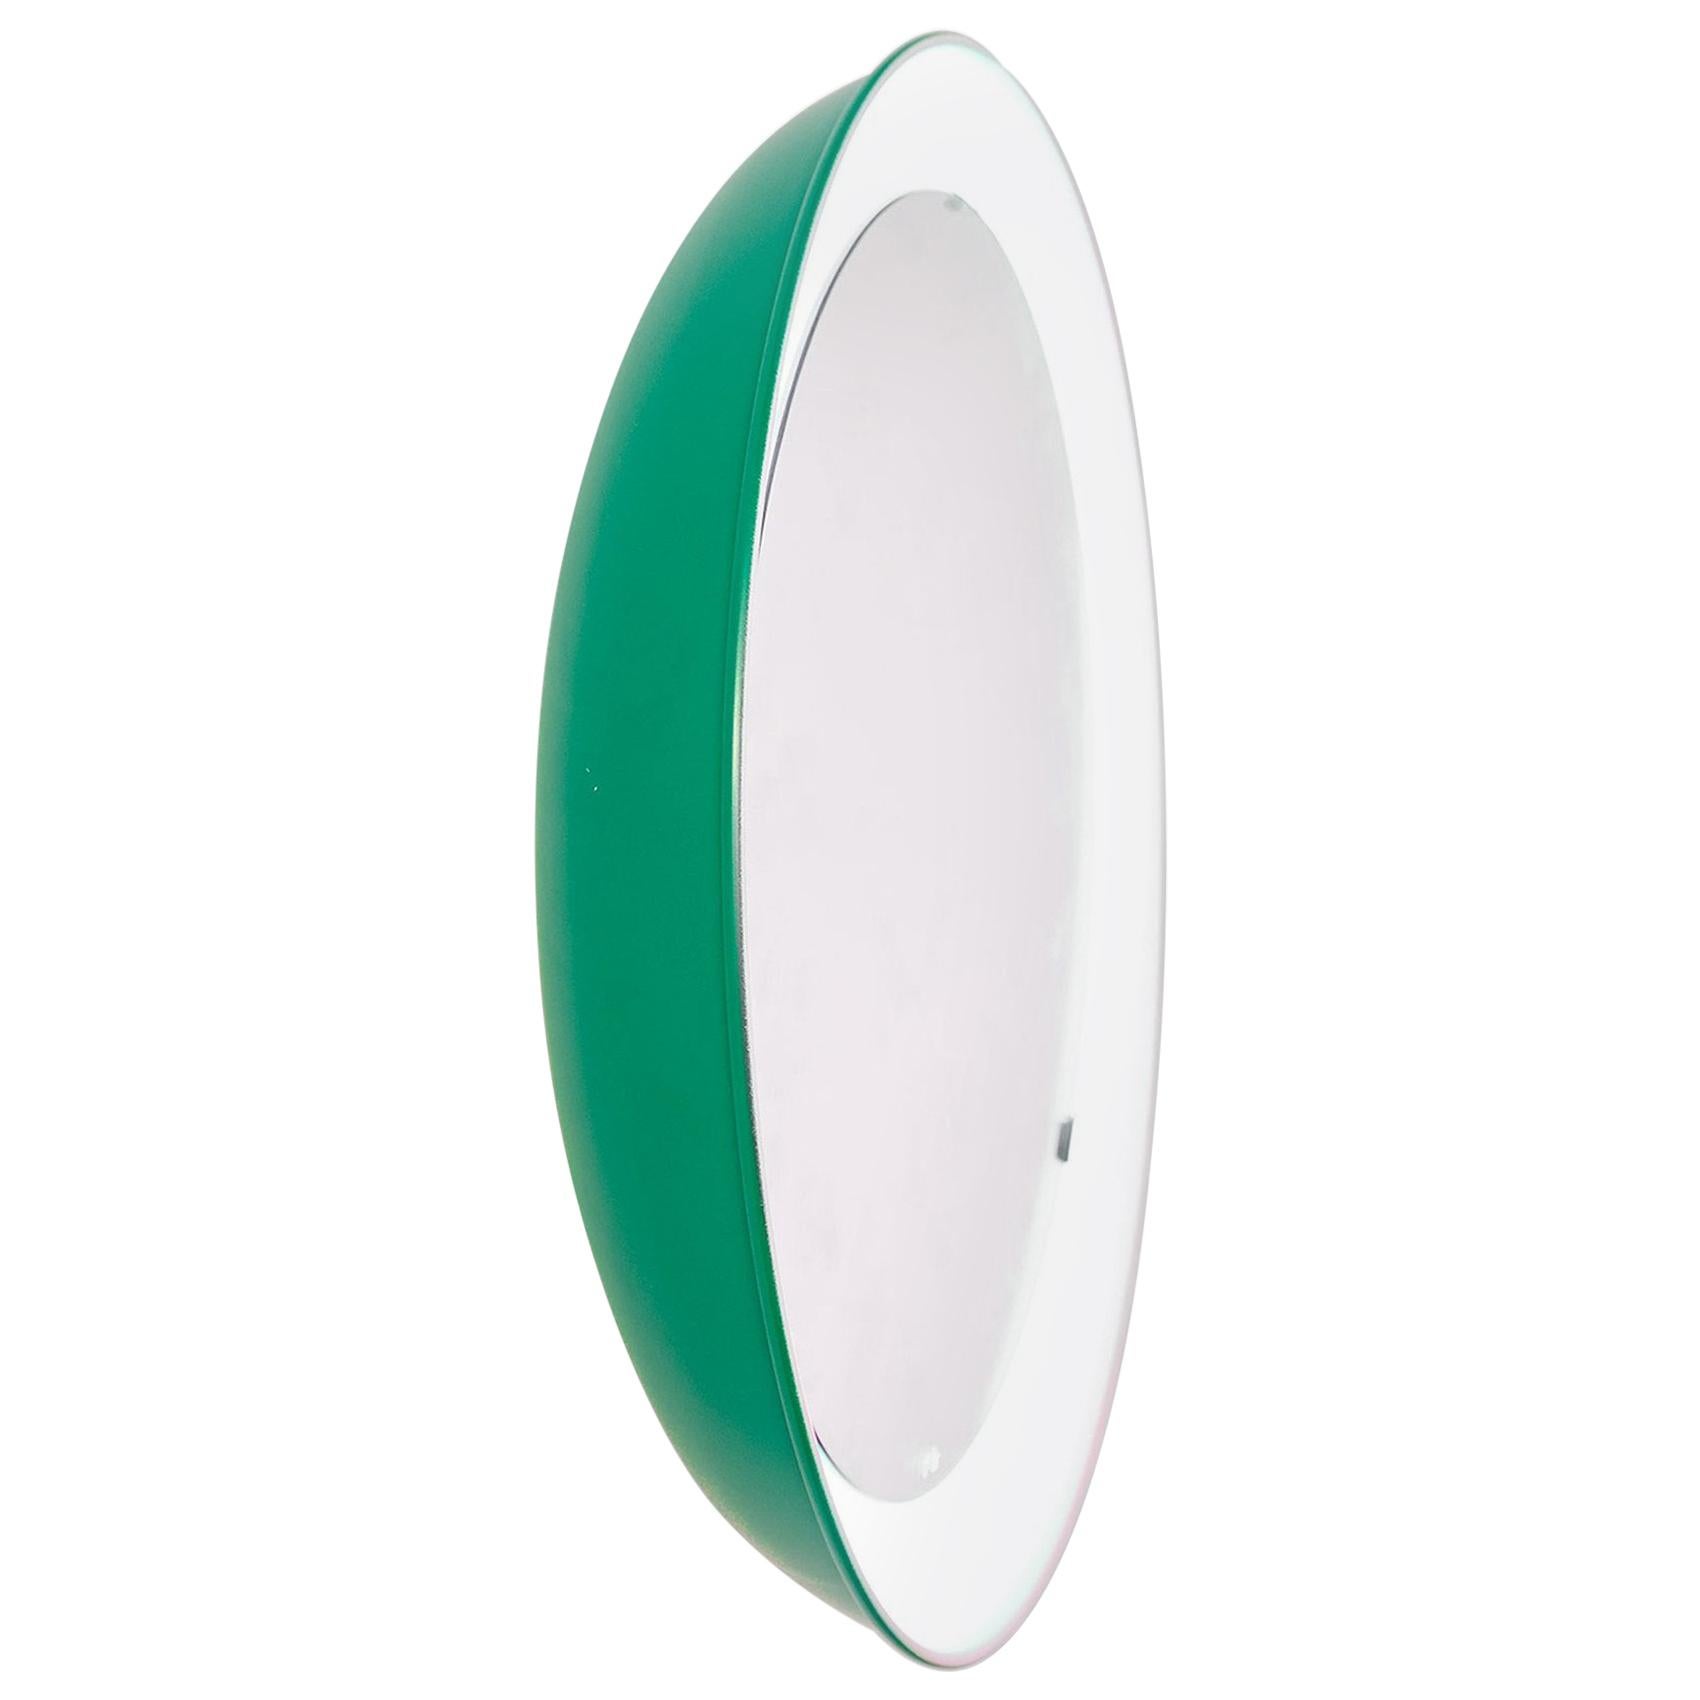 PH-Spiegel, grün lackiert, satiniertes Passepartout, Durchmesser 700 mm, Ein- und Ausziehschnur, ph